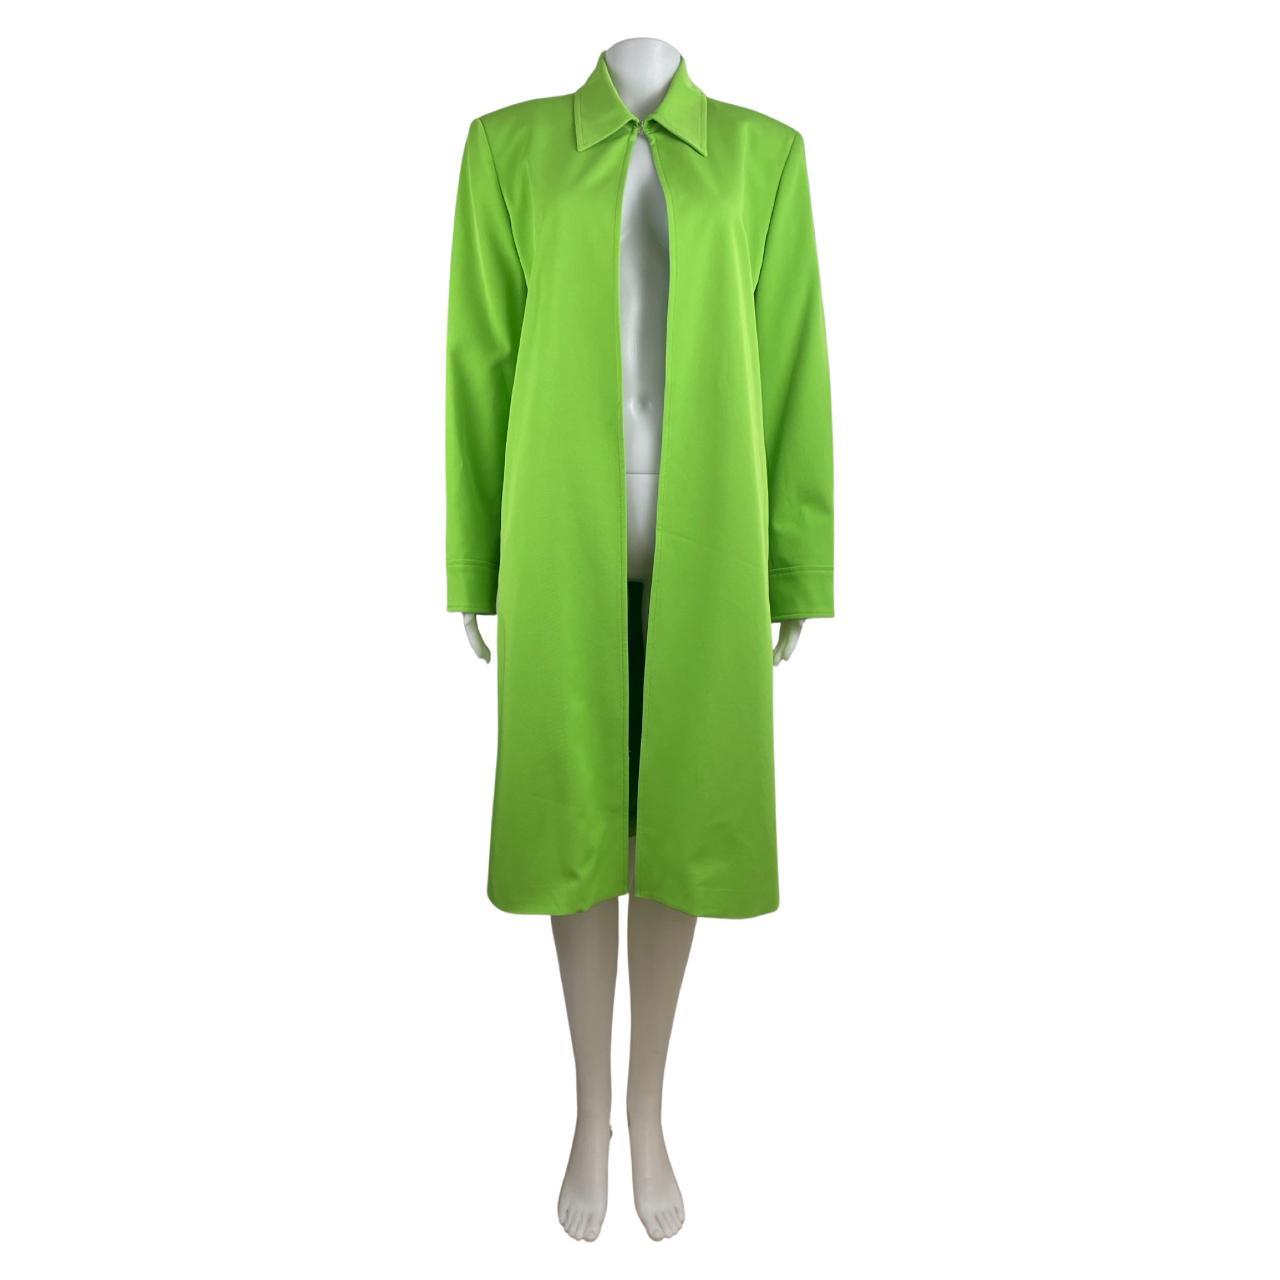 Vintage Bright Green Jacket | 90s Long Cut Open... - Depop